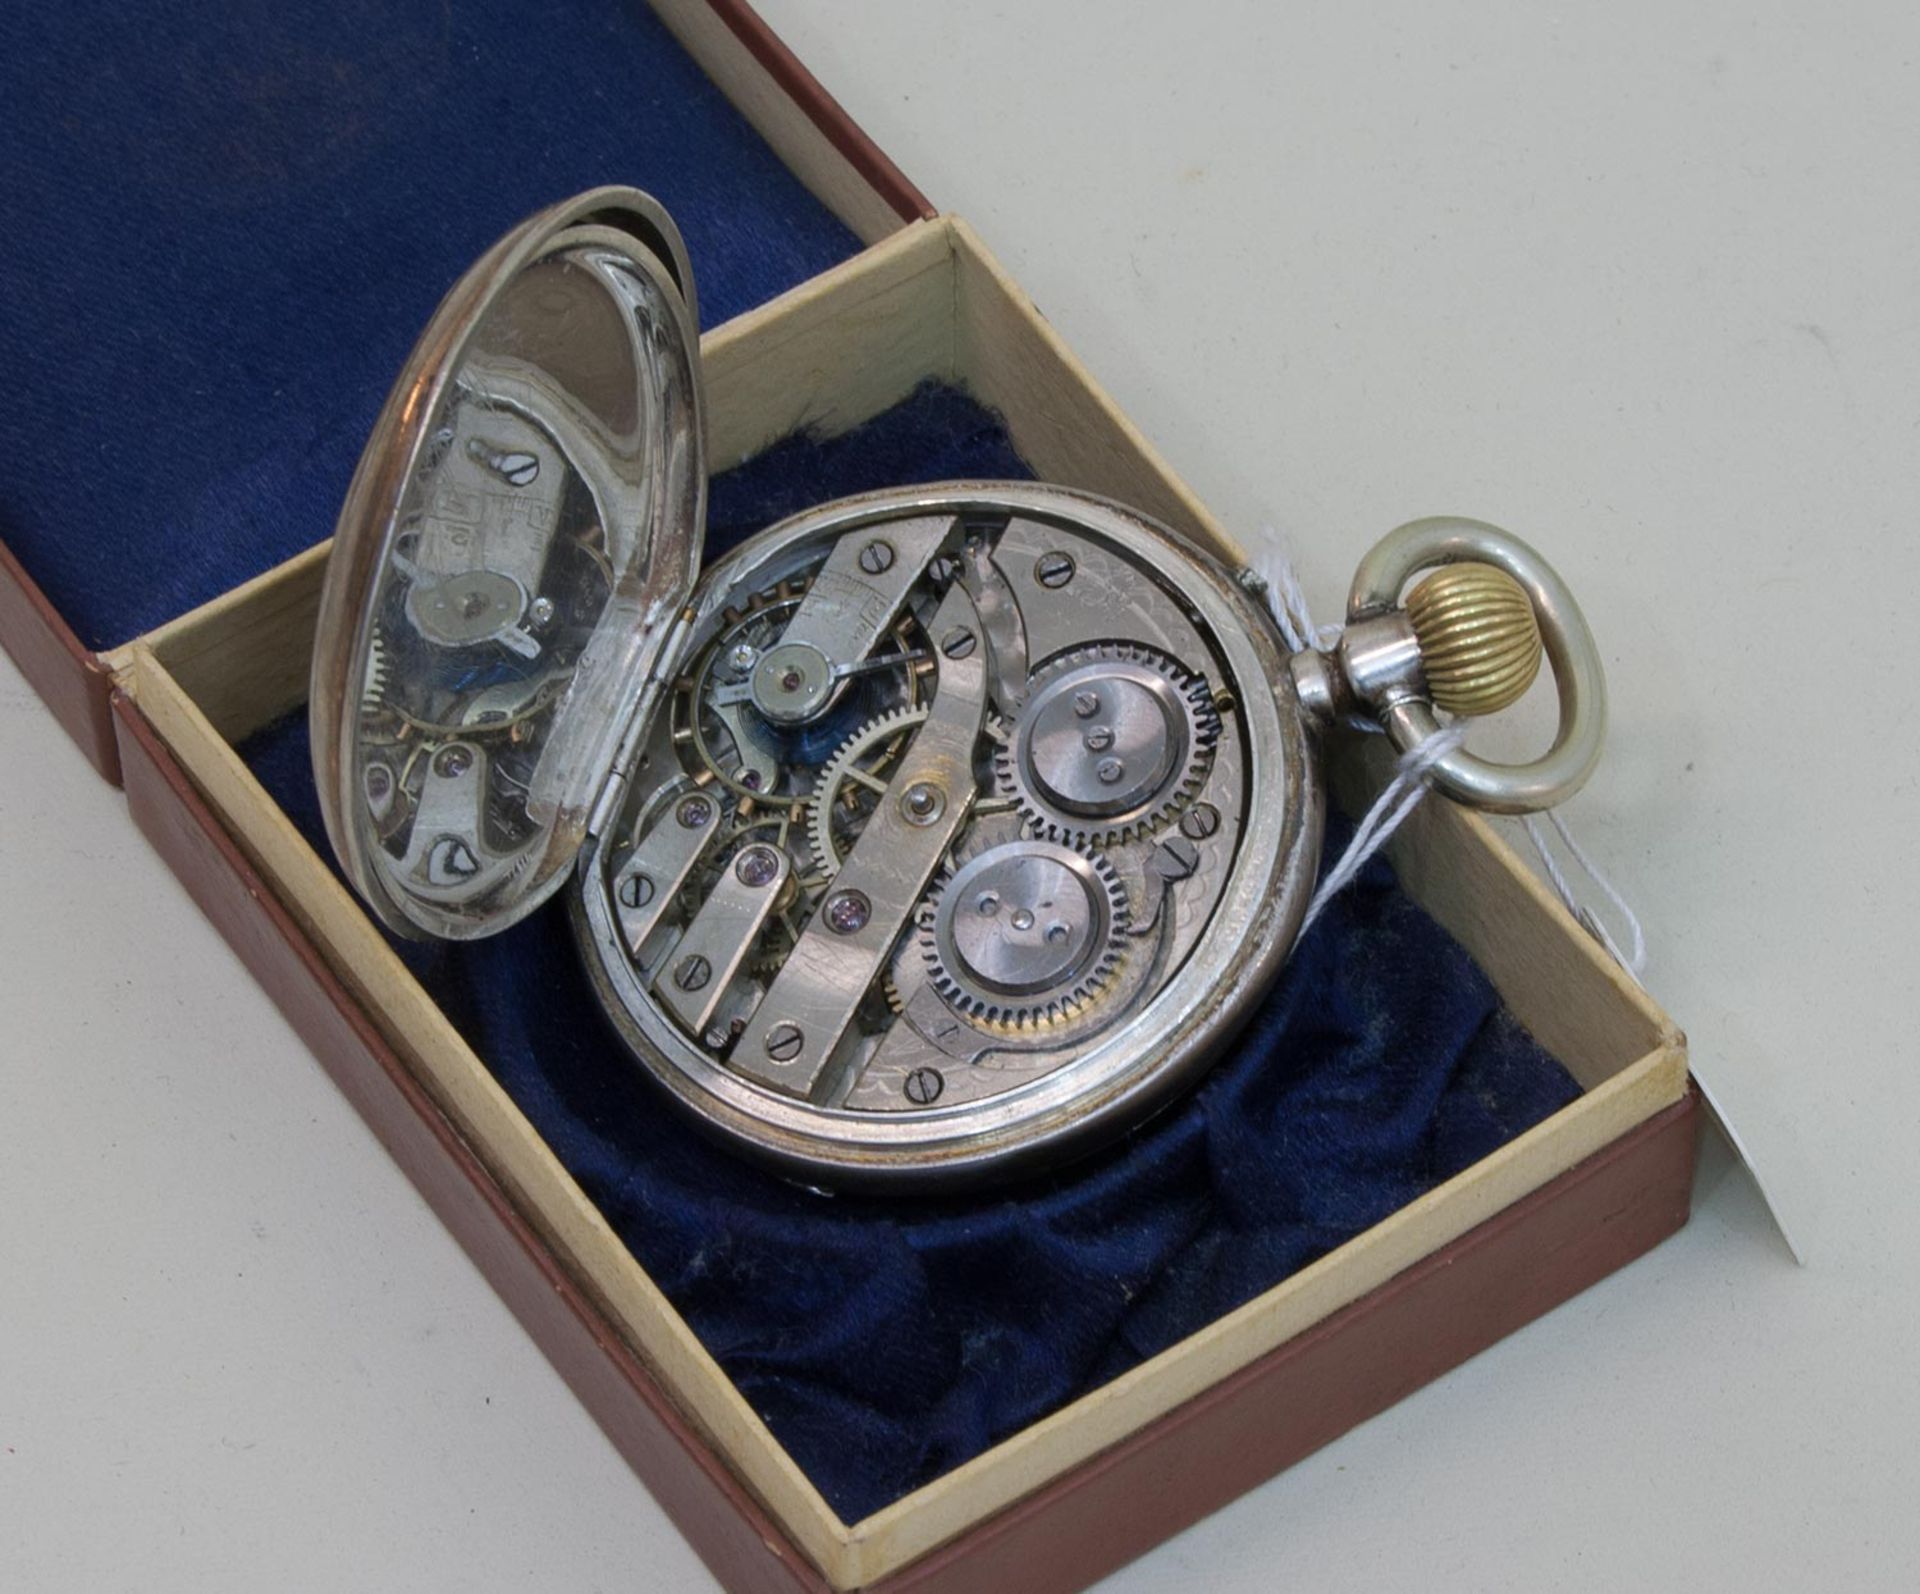 Herren Taschenuhrum 1900, Silbergehäuse, unbekannt gemarkt, rep.-bed.Mindestpreis: 30 EUR - Bild 2 aus 2